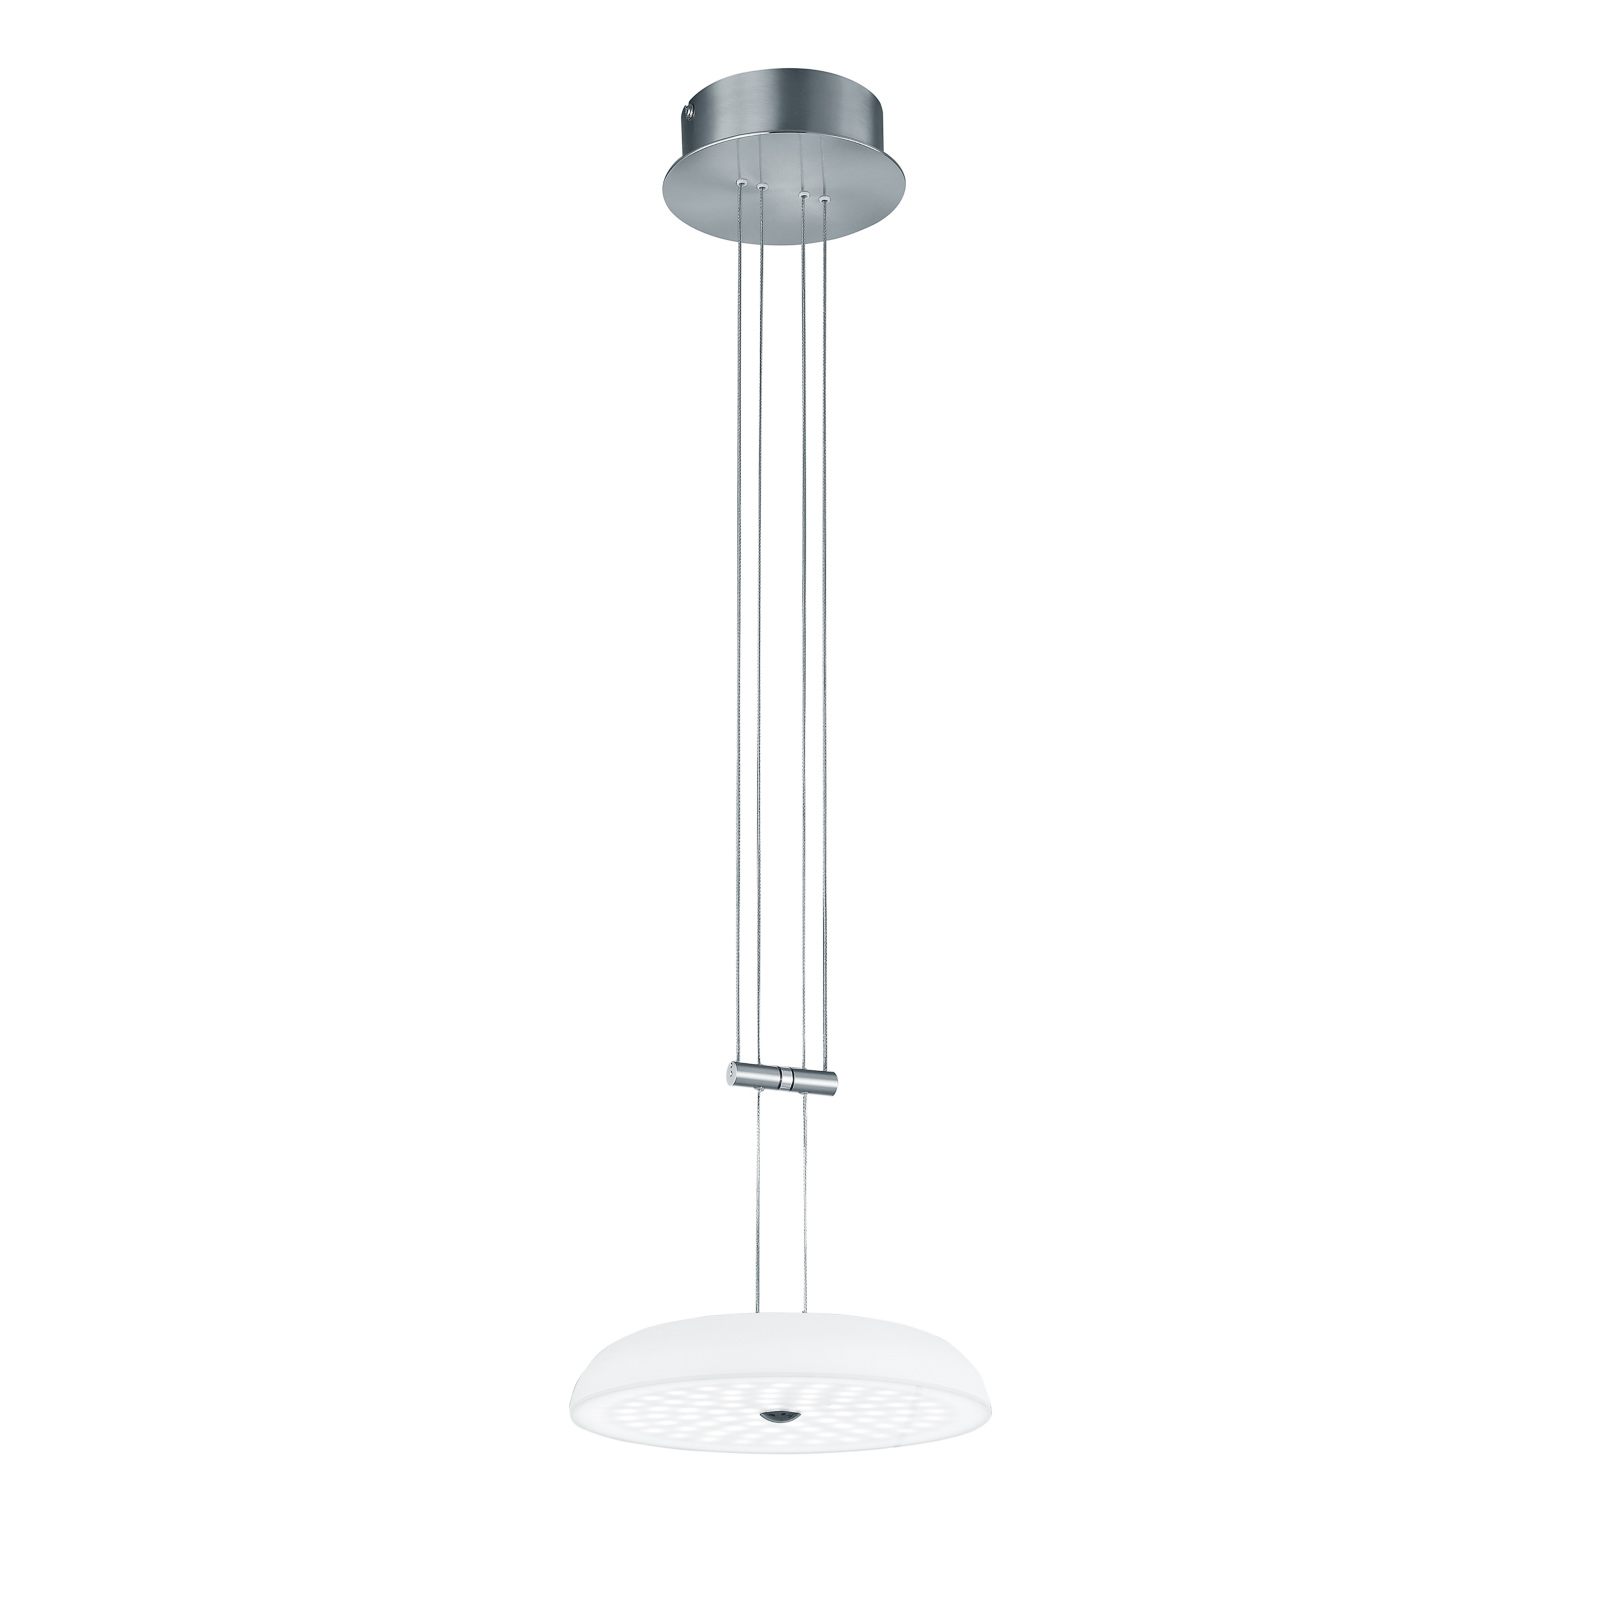 BANKAMP Vanity hanglamp 1 lampje nikkel Ø 25 cm